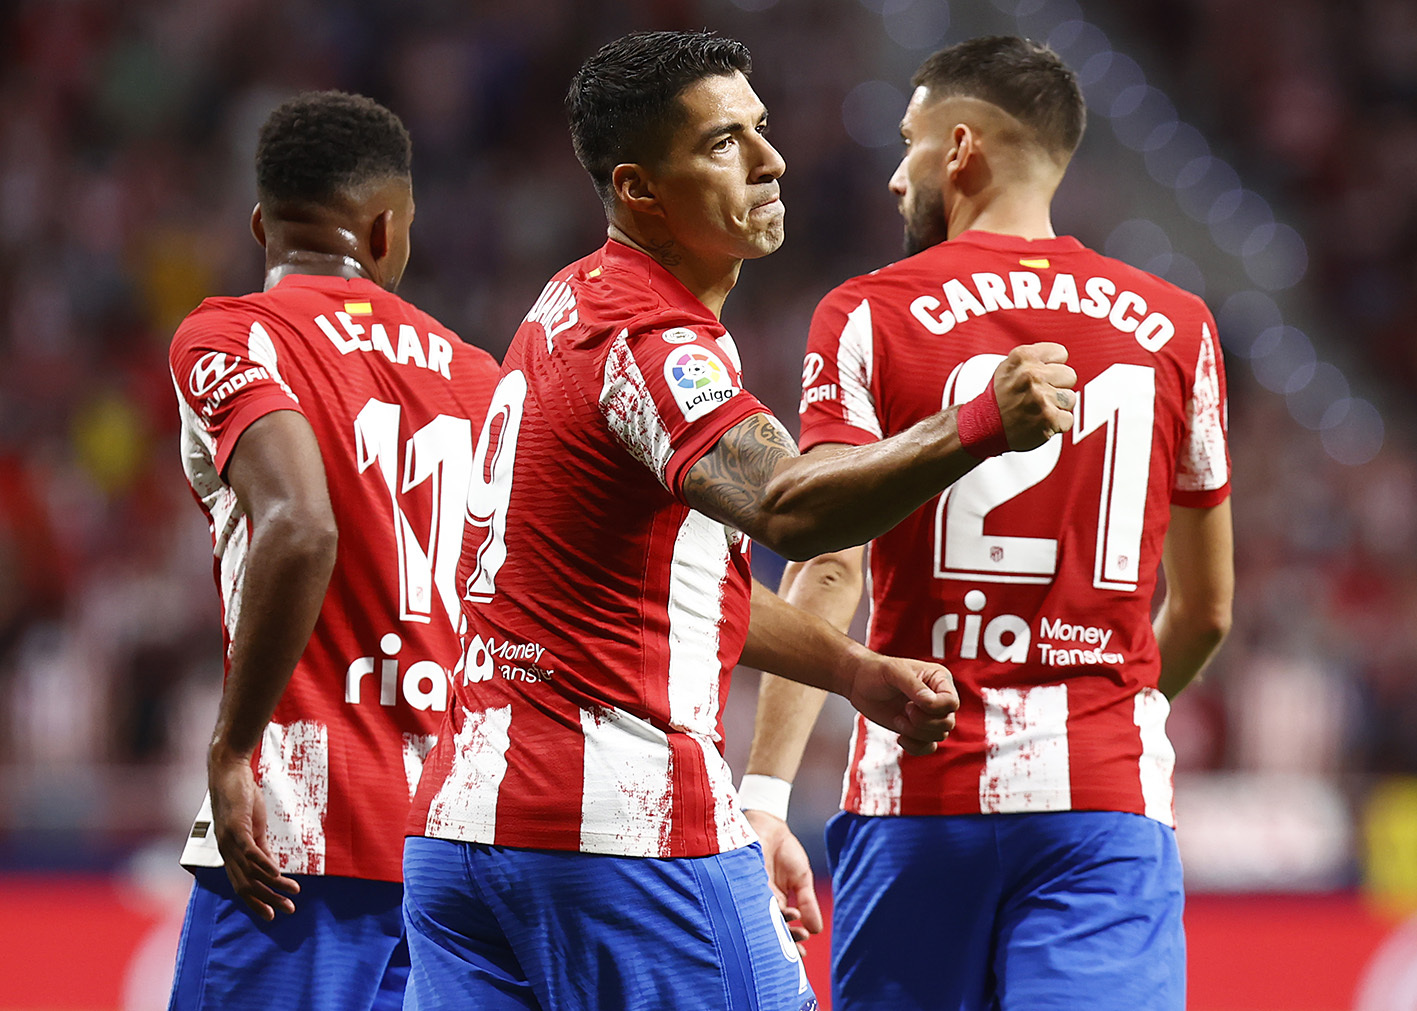 Kann Atlético de Madrid in dieser Saison wieder Meister werden?  2021/2022?